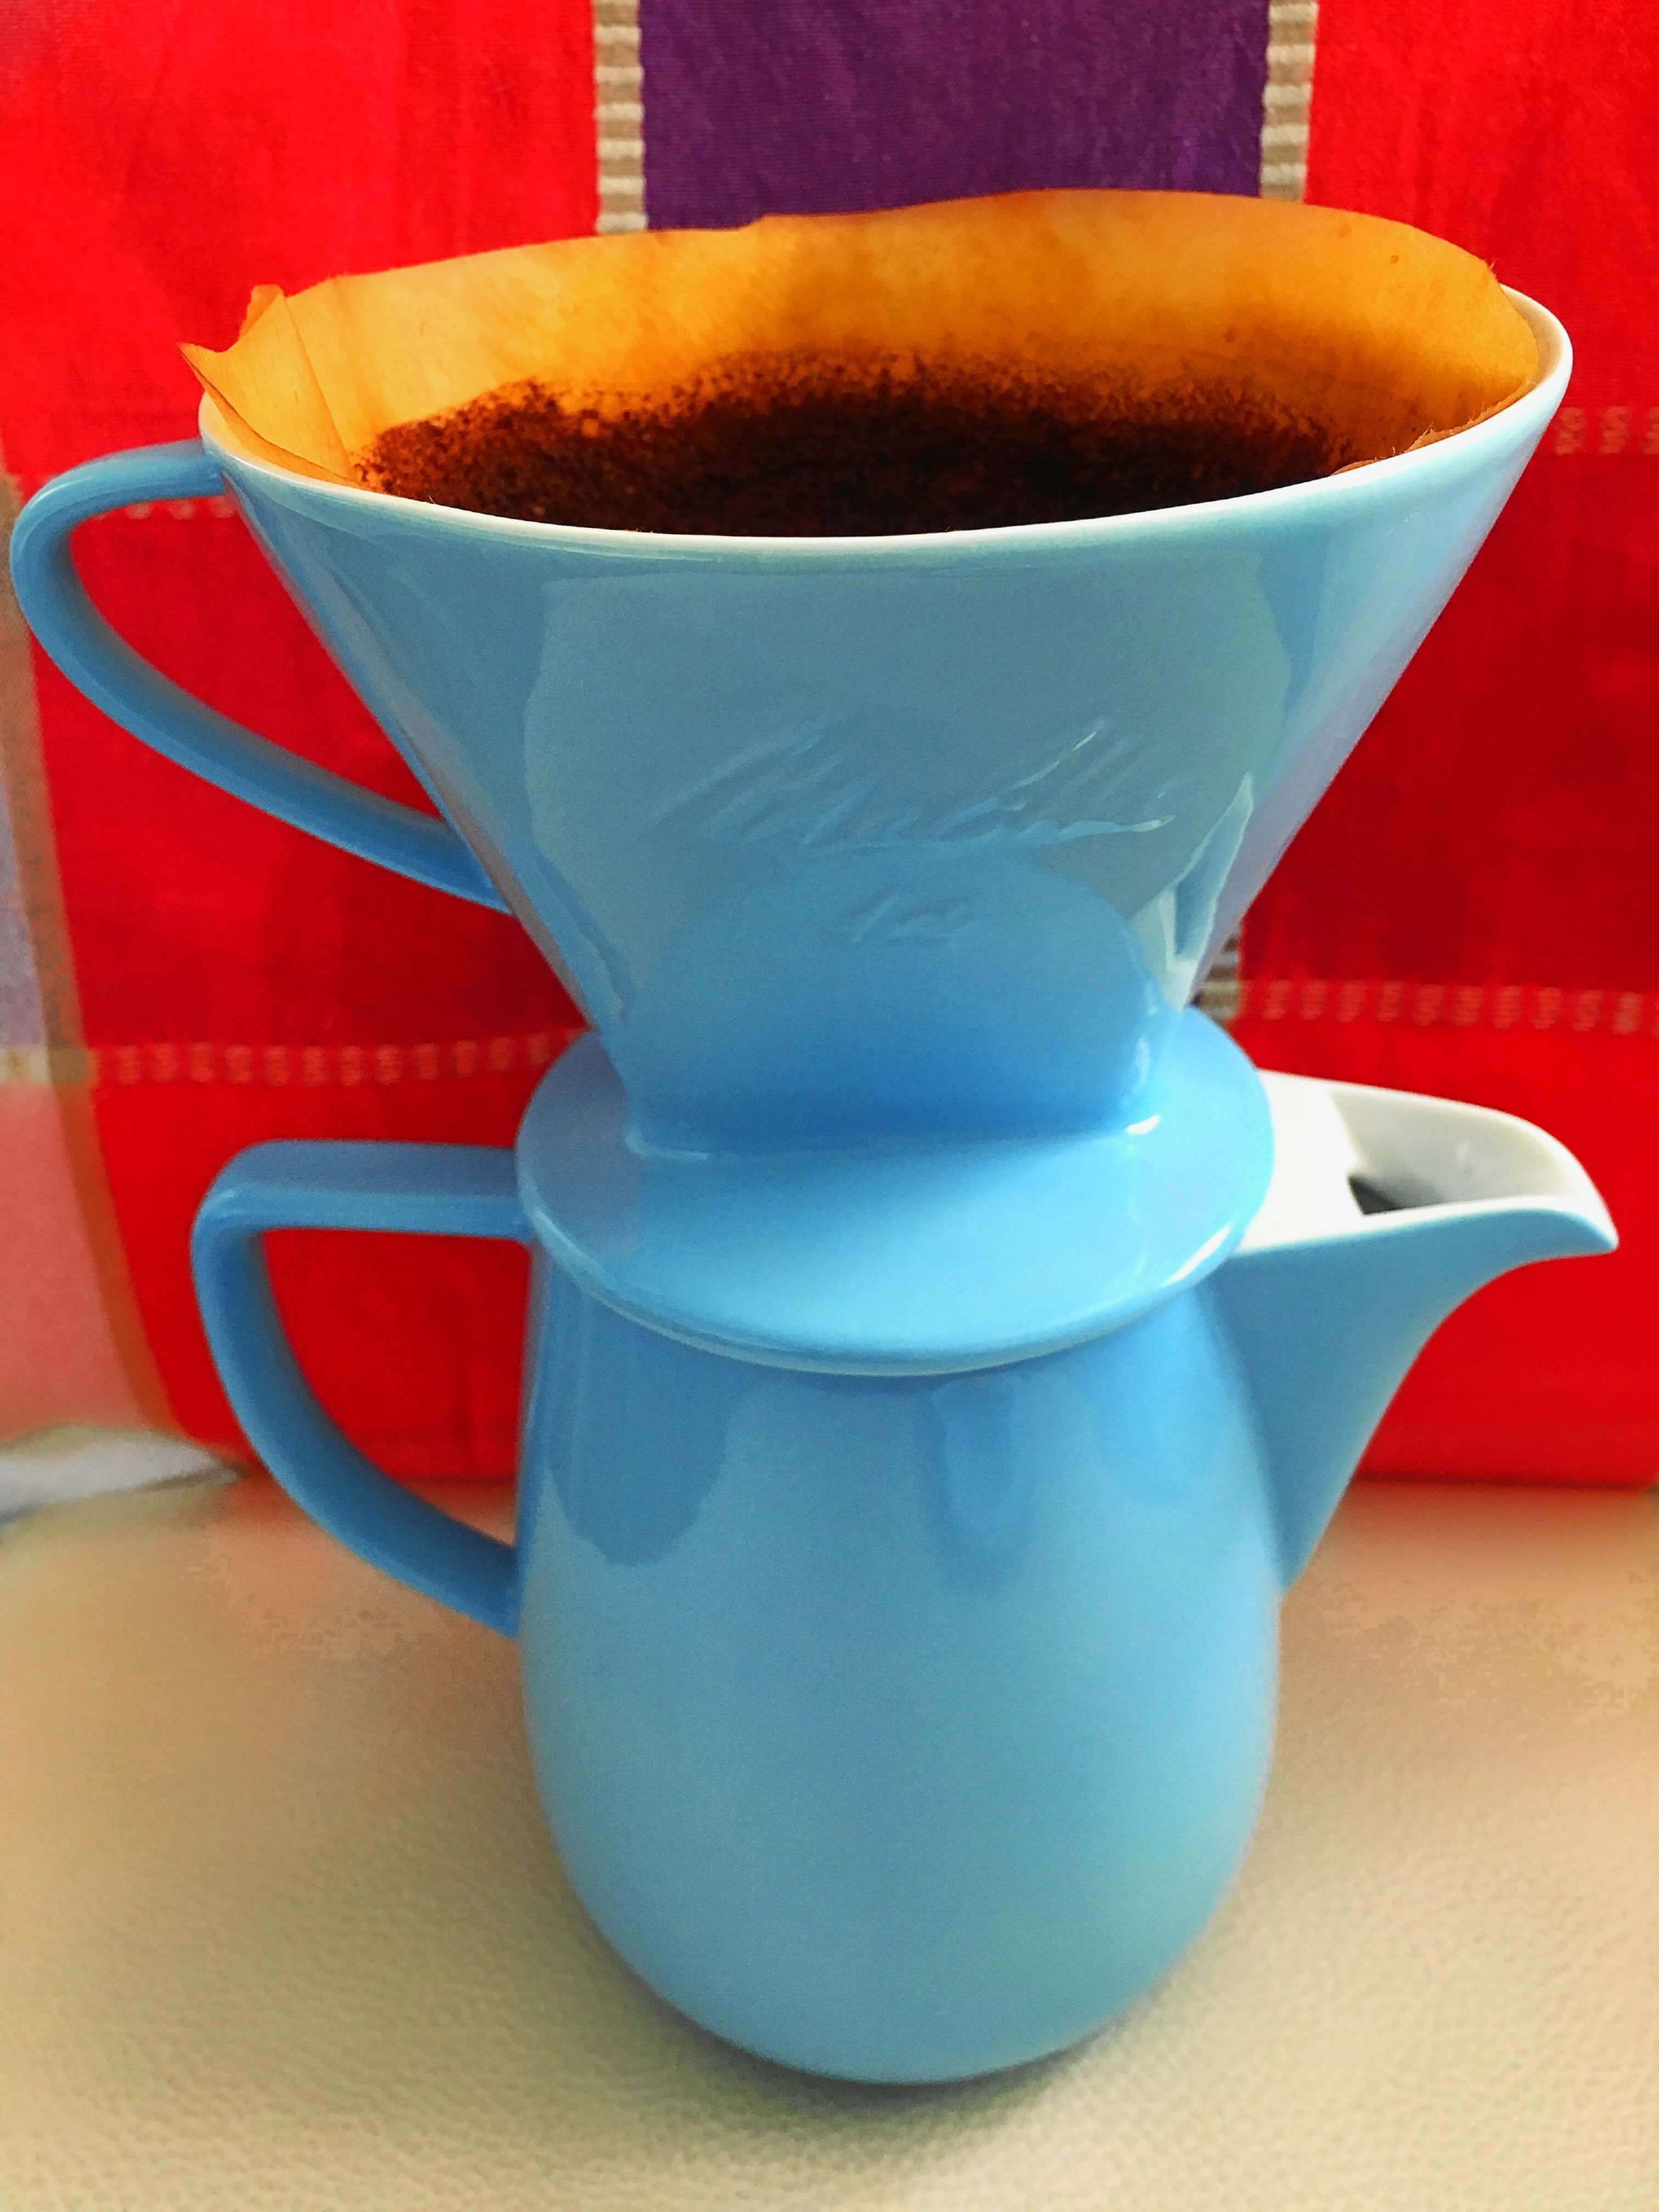 Heute zeige ich euch das stylische Melitta-Filter von Friesland Porzellan, erzähle die Geschichte des Kaffeefilters und gebe Tipps für`s perfekte Pour-Over